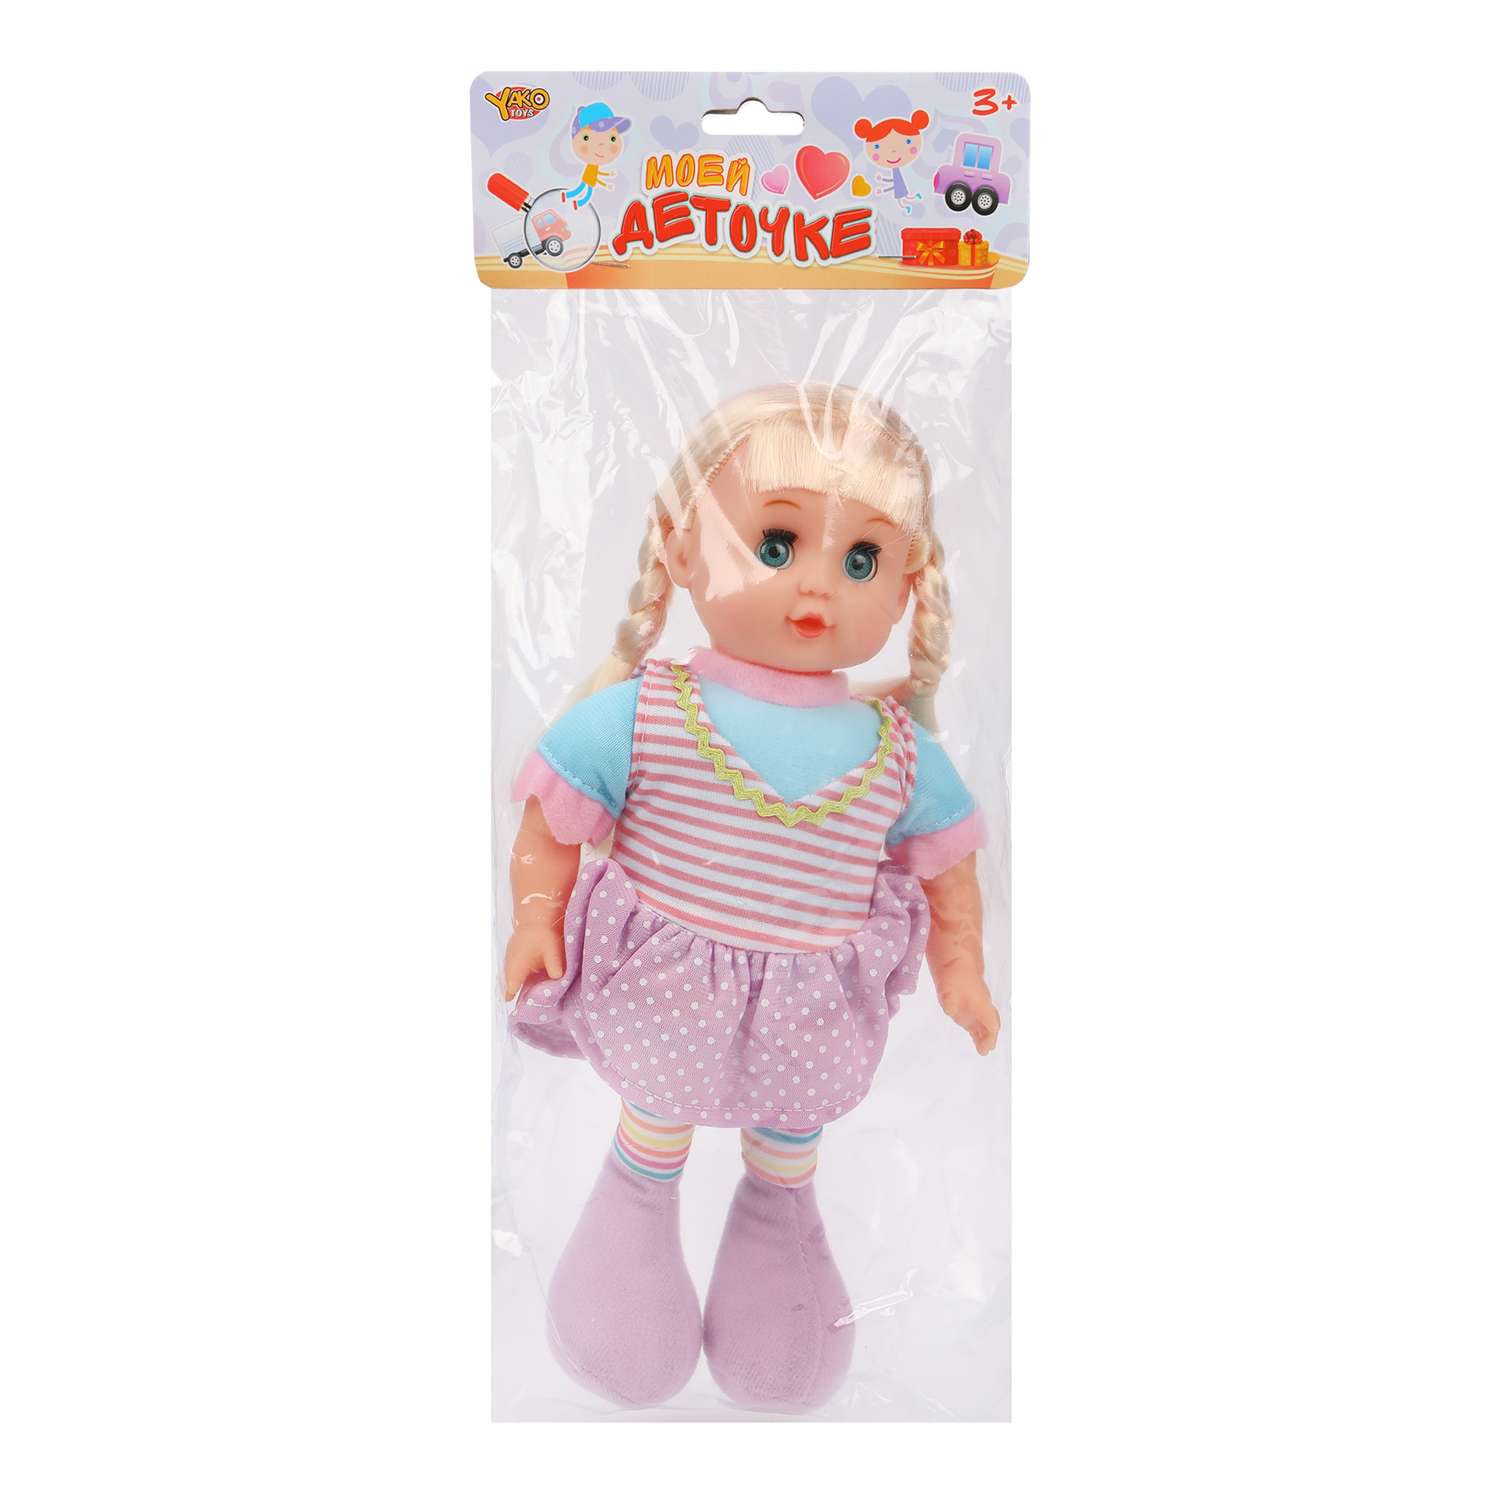 Кукла для девочки Наша Игрушка мягконабивная 30 см сиреневое платье в пакете 612065 - фото 4